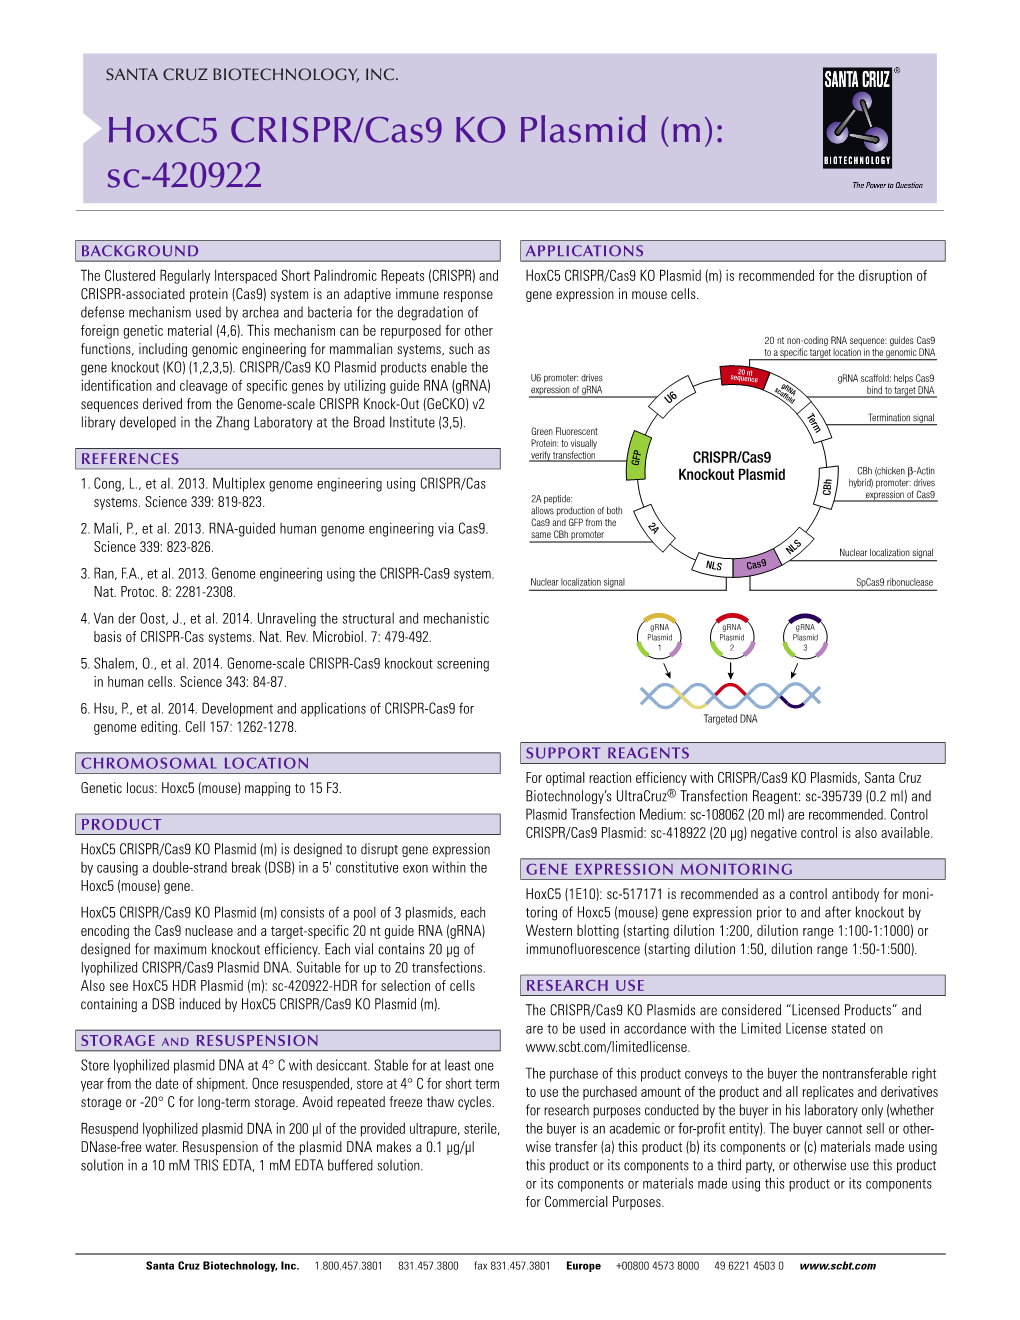 Hoxc5 CRISPR/Cas9 KO Plasmid (M): Sc-420922